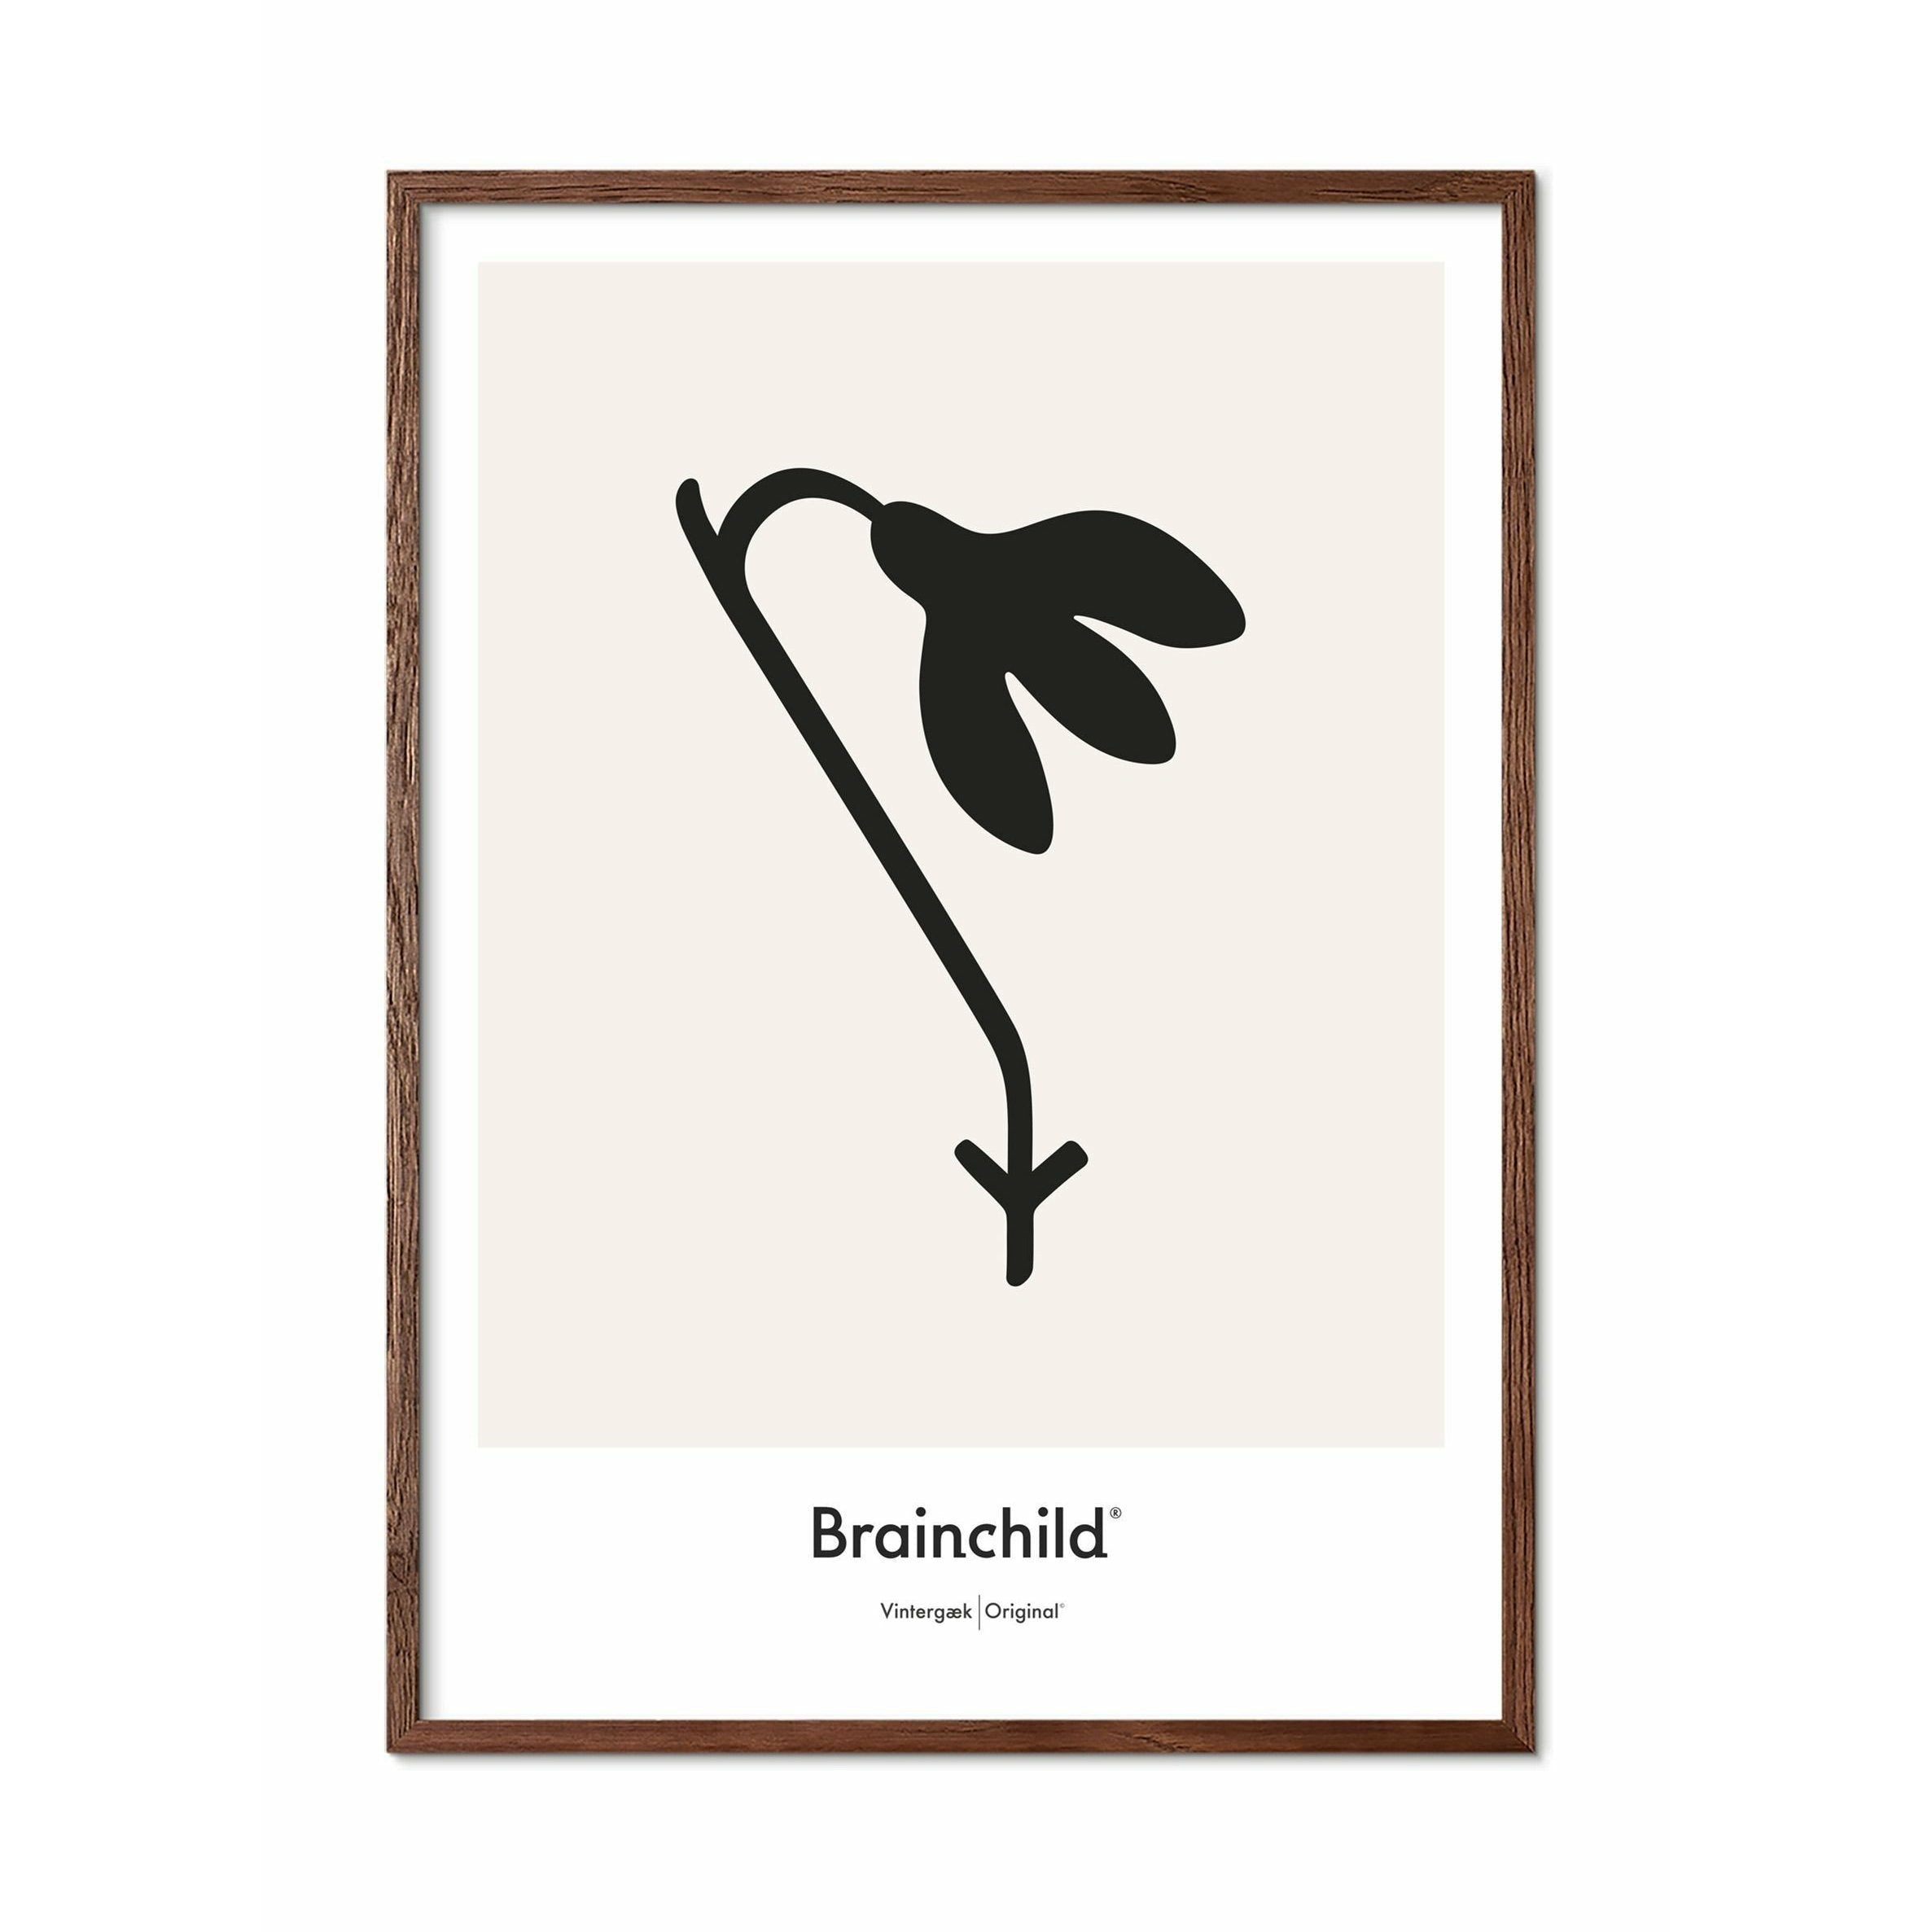 Brainchild Snowdrop Design Icon Poster, Frame Made Of Dark Wood A5, Grey